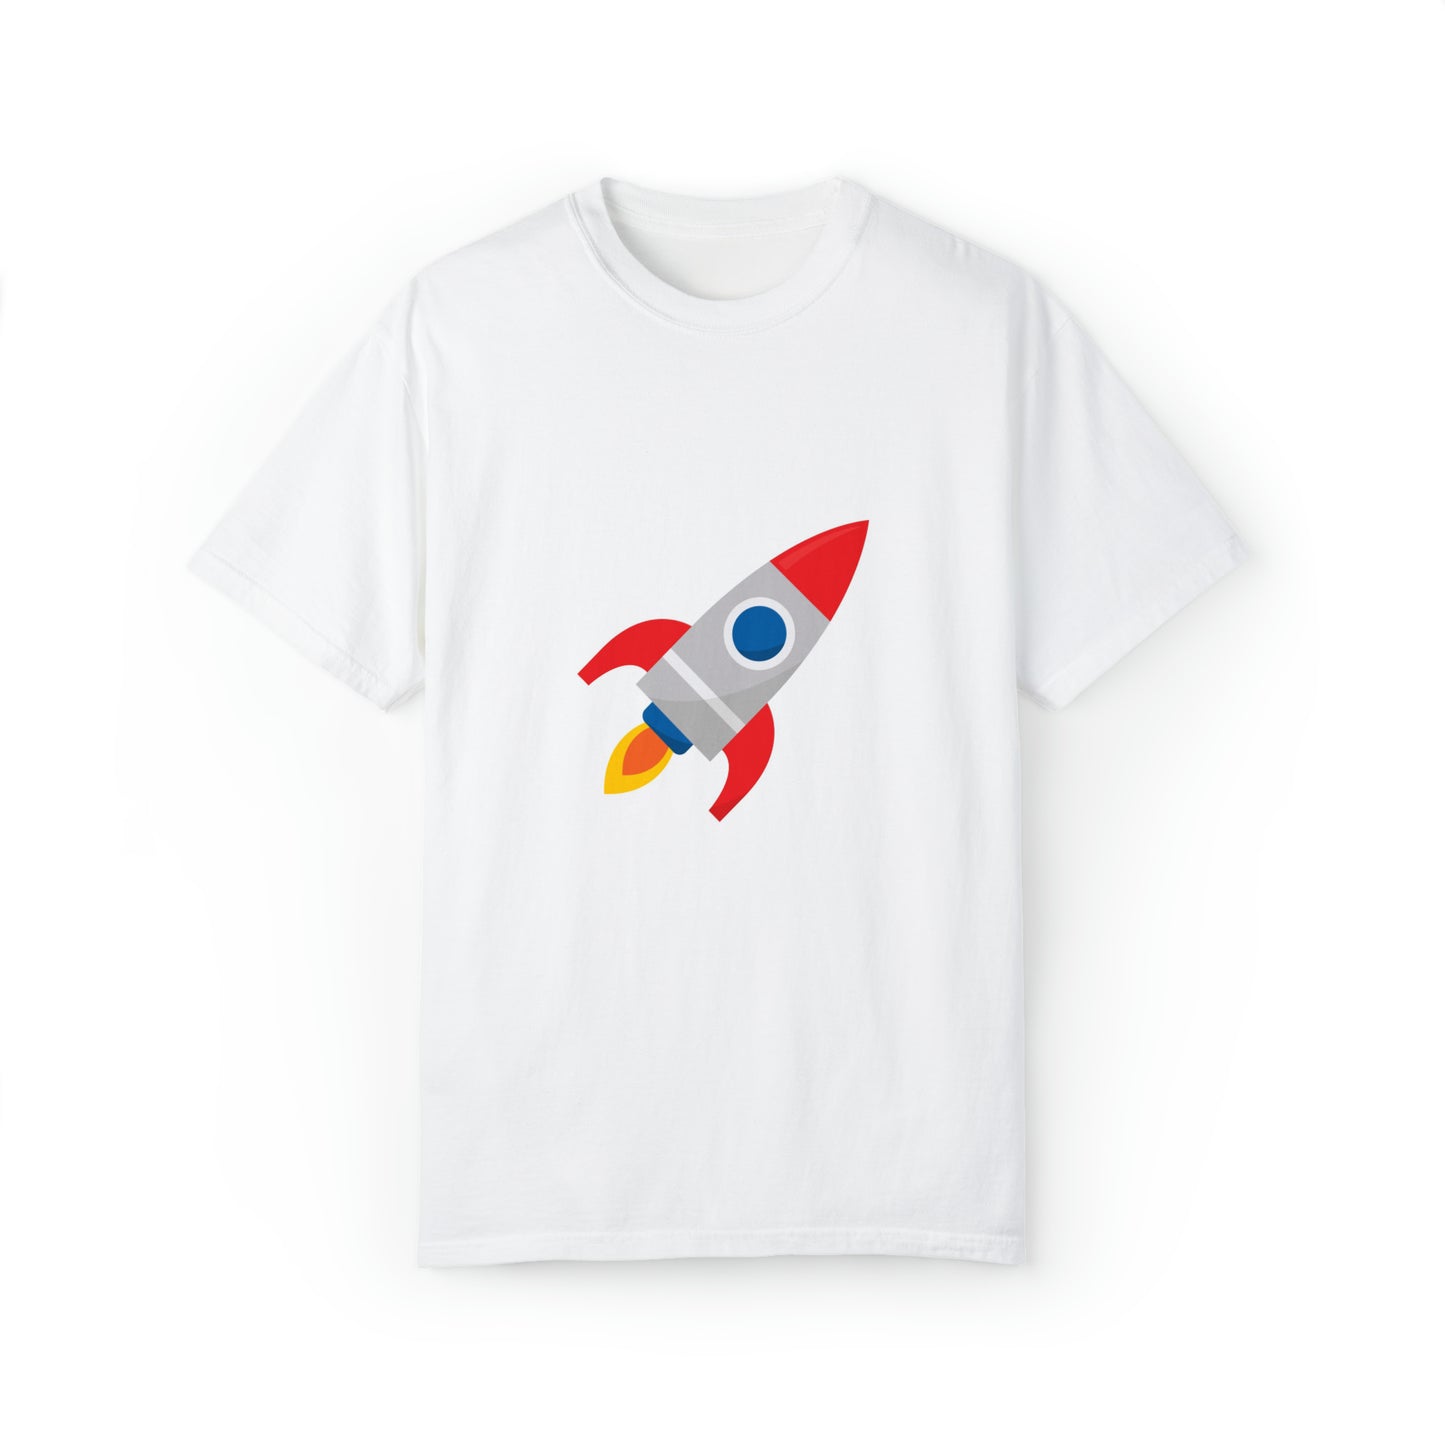 Rocket - Up Up and Away tshirt